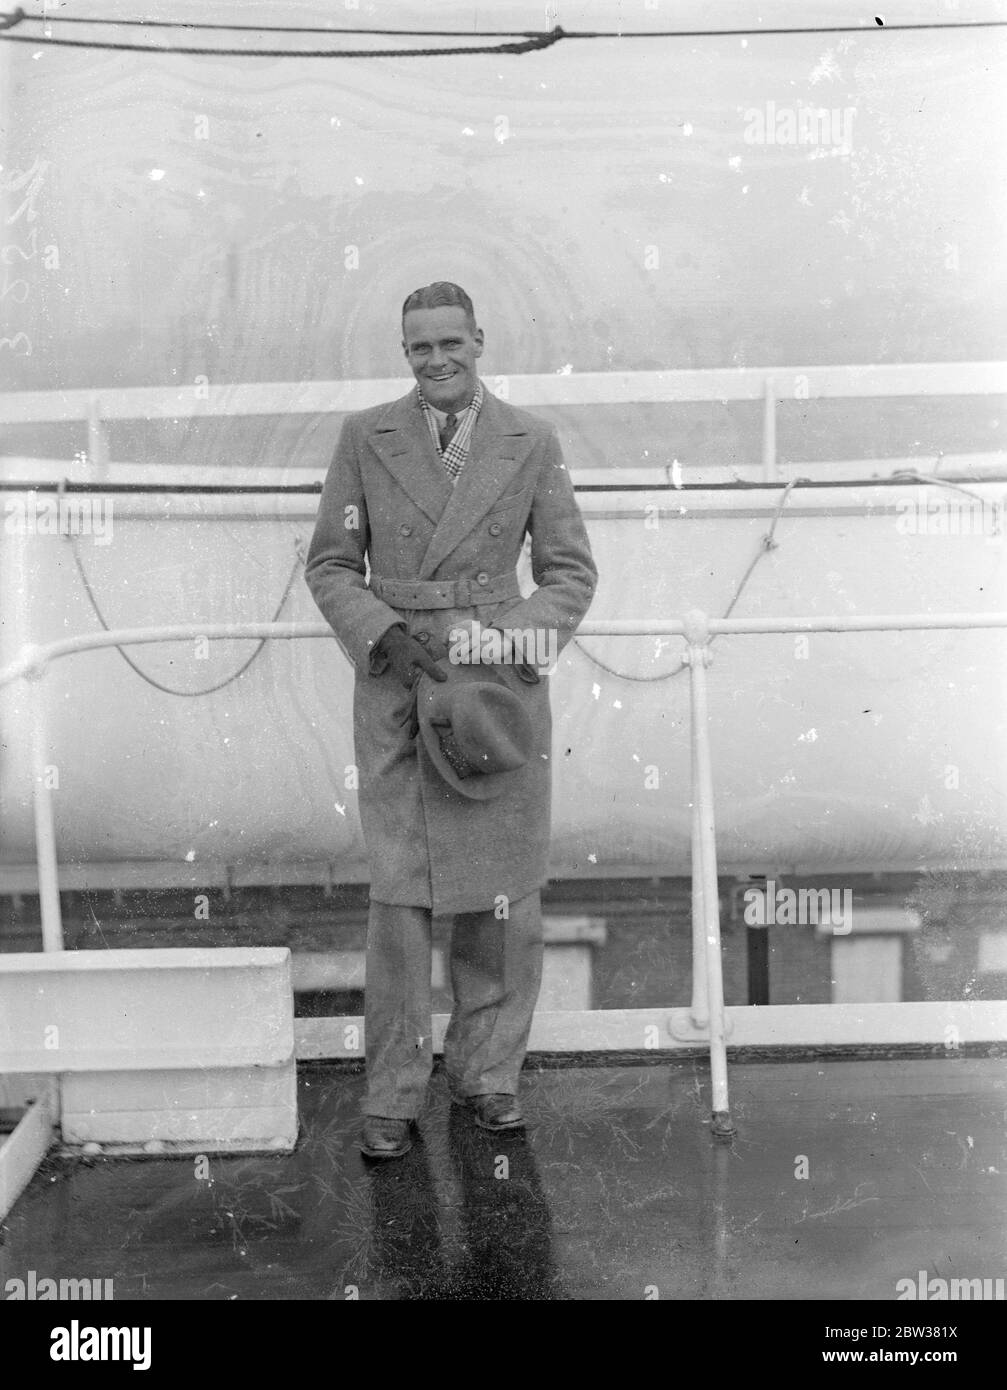 Huddersfield Town ' s , centre sud-africain arrive . L S Brown , le centre de Transvaal avancé qui a été signé par Huddersfield Town FC , est arrivé à Southampton à bord du château Dunbar du Cap . Brun est âgé de 23 ans et est de six pieds deux pouces de hauteur . Il a été accueilli à son arrivée par M. Raymer , directeur de la ville de Huddersfield . Photos ; L S Brown à l'arrivée à Southampton . 30 décembre 1933 Banque D'Images